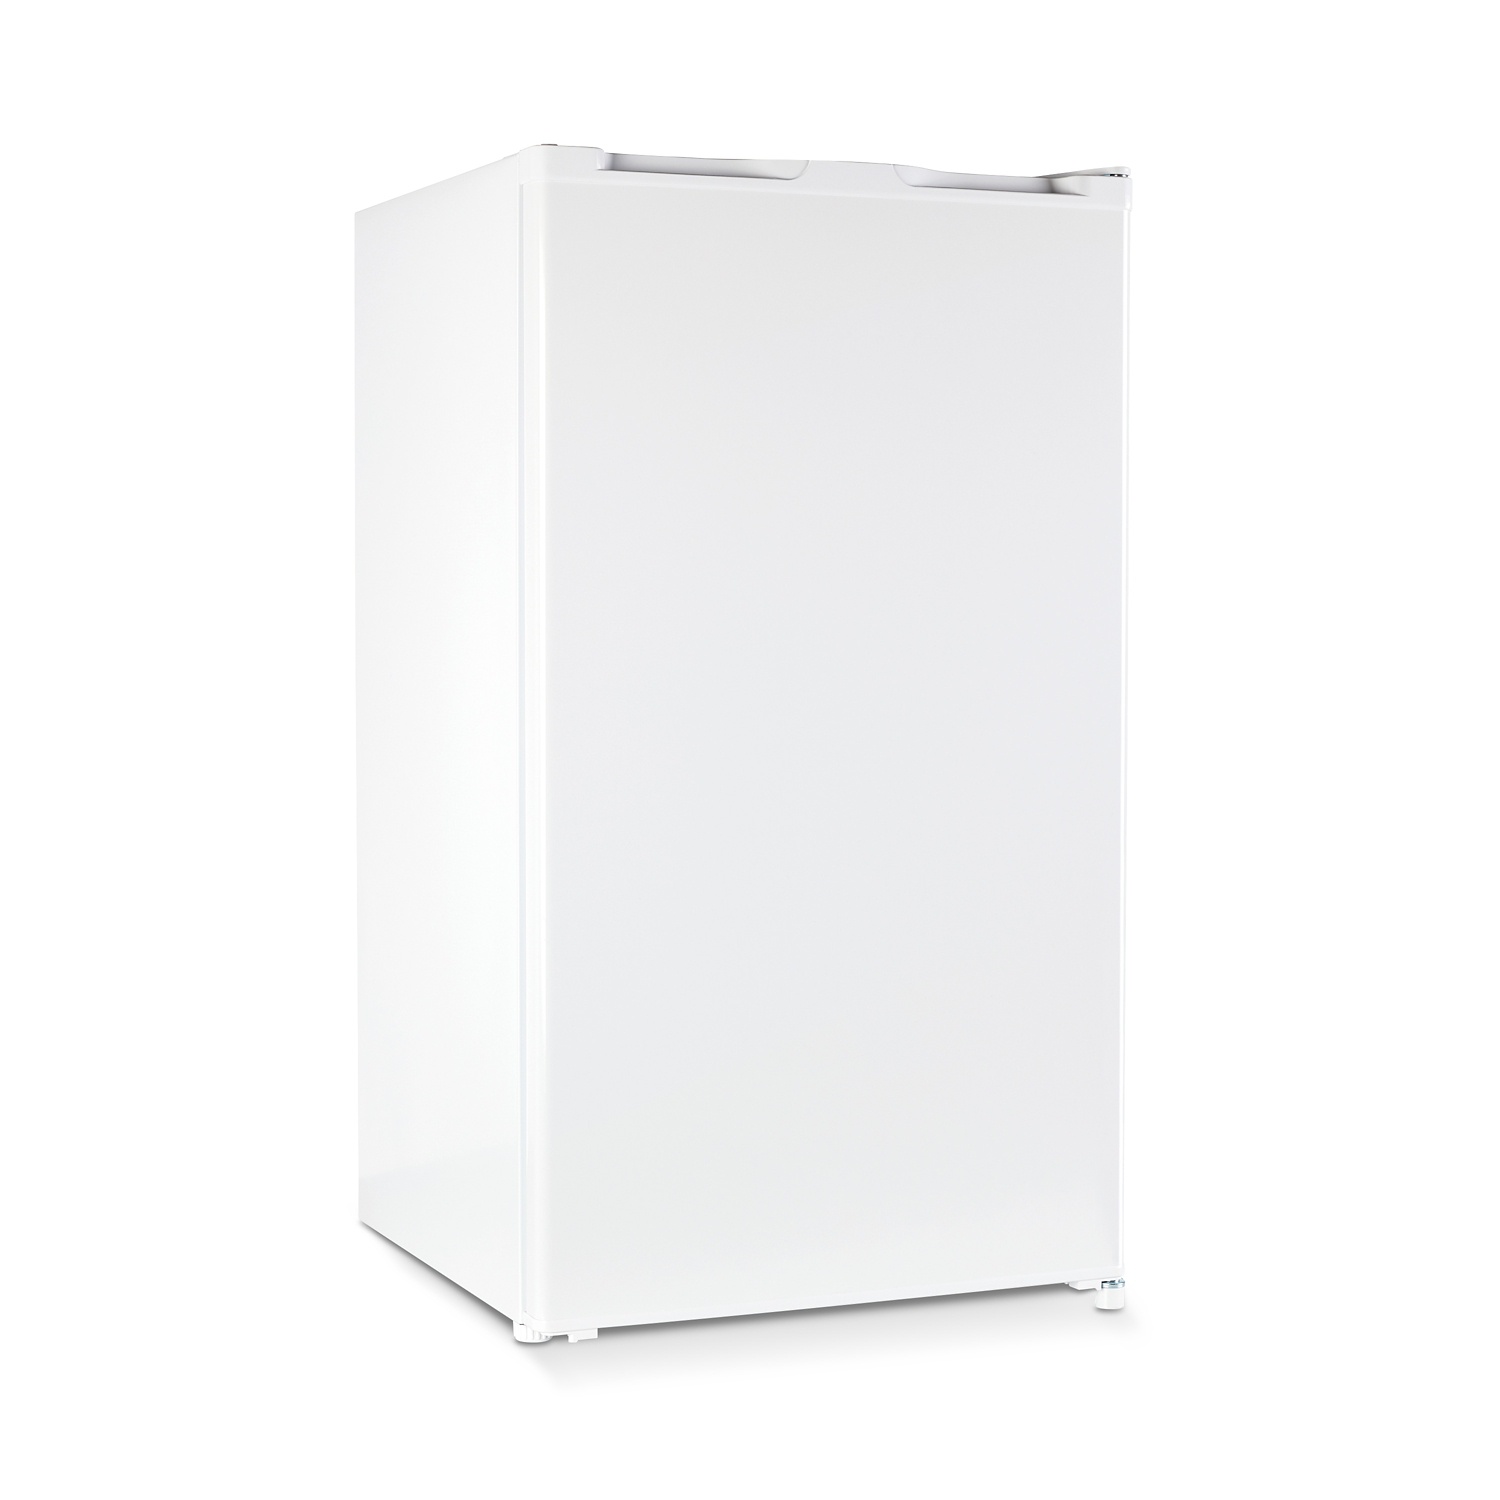 MEDION Kühlschrank mit Eiswürfelfach